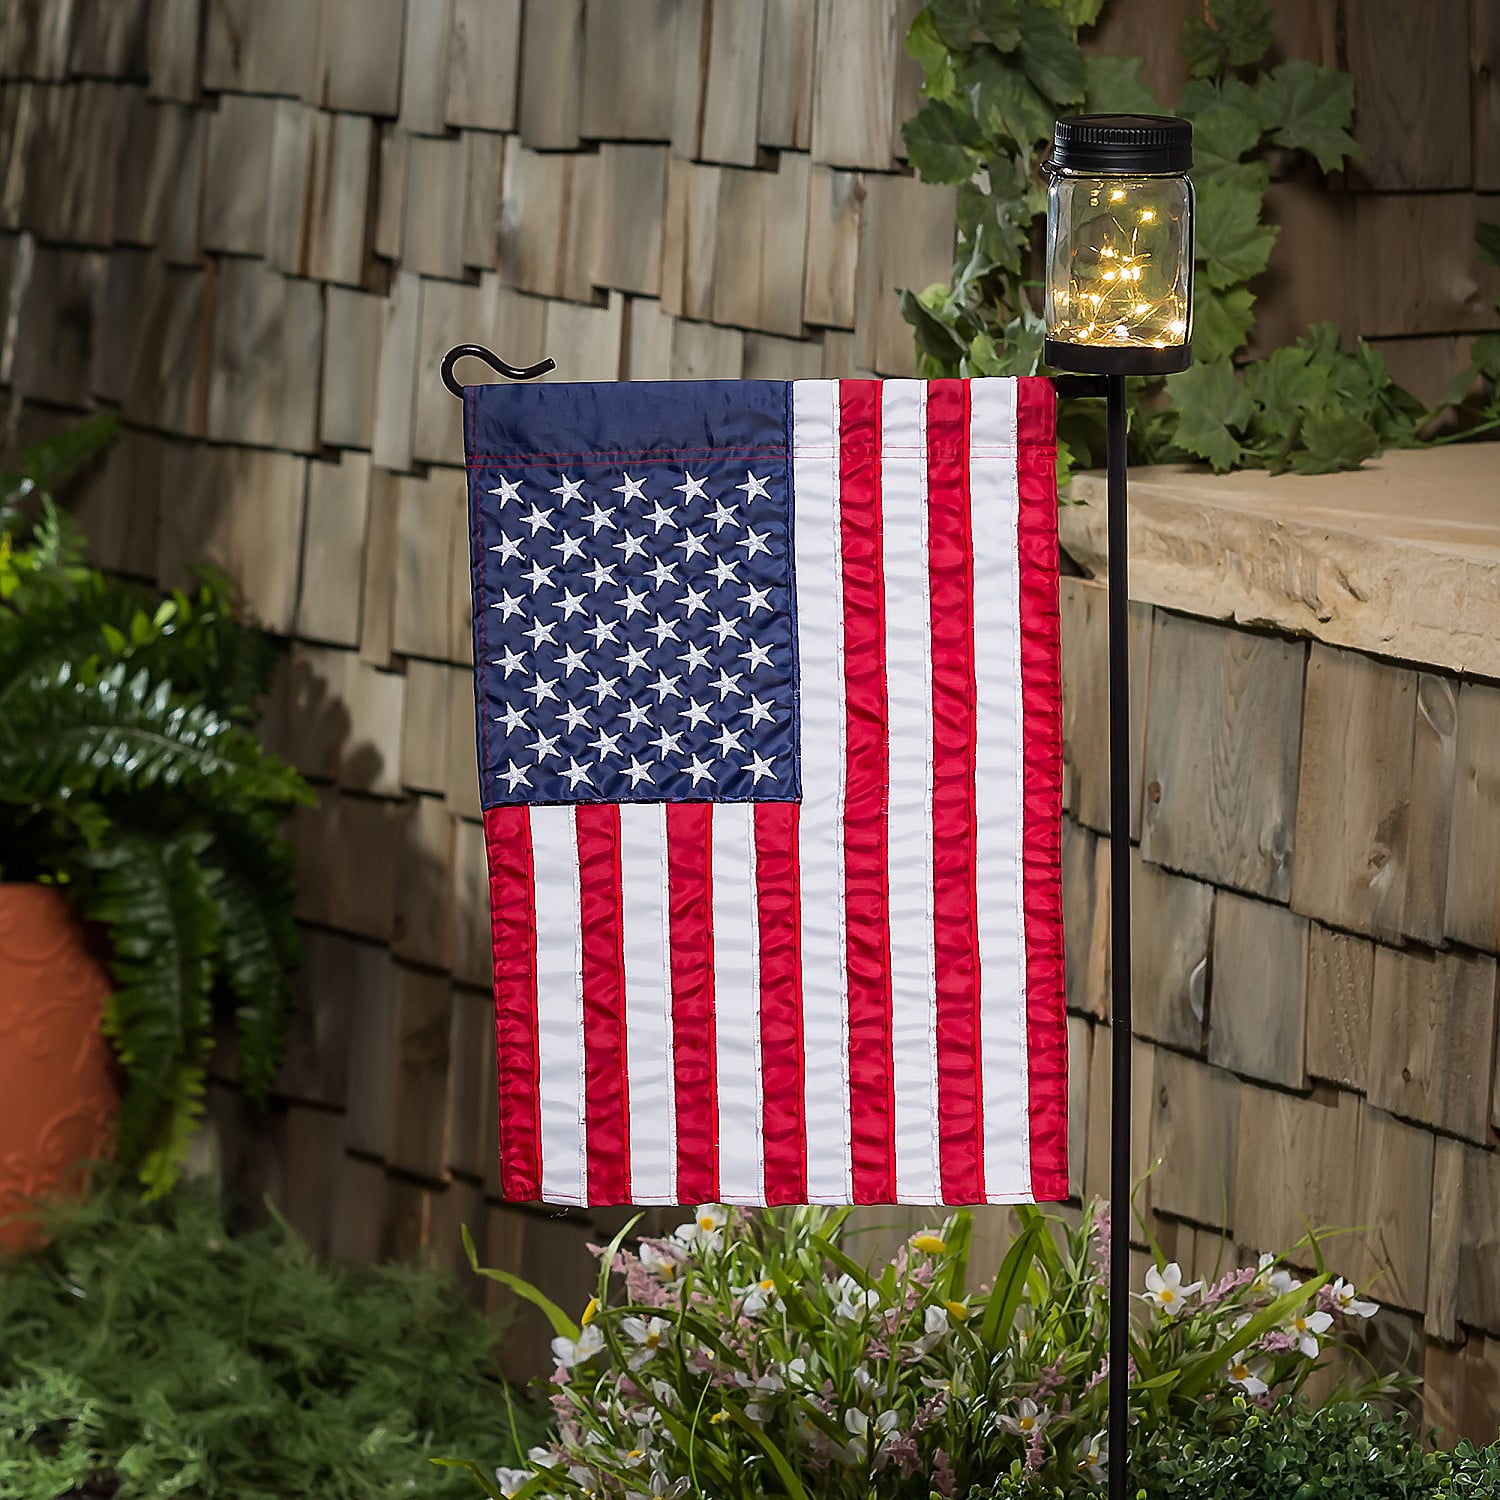 Evergreen Mason Jar Solar Garden Flag Stand, KD